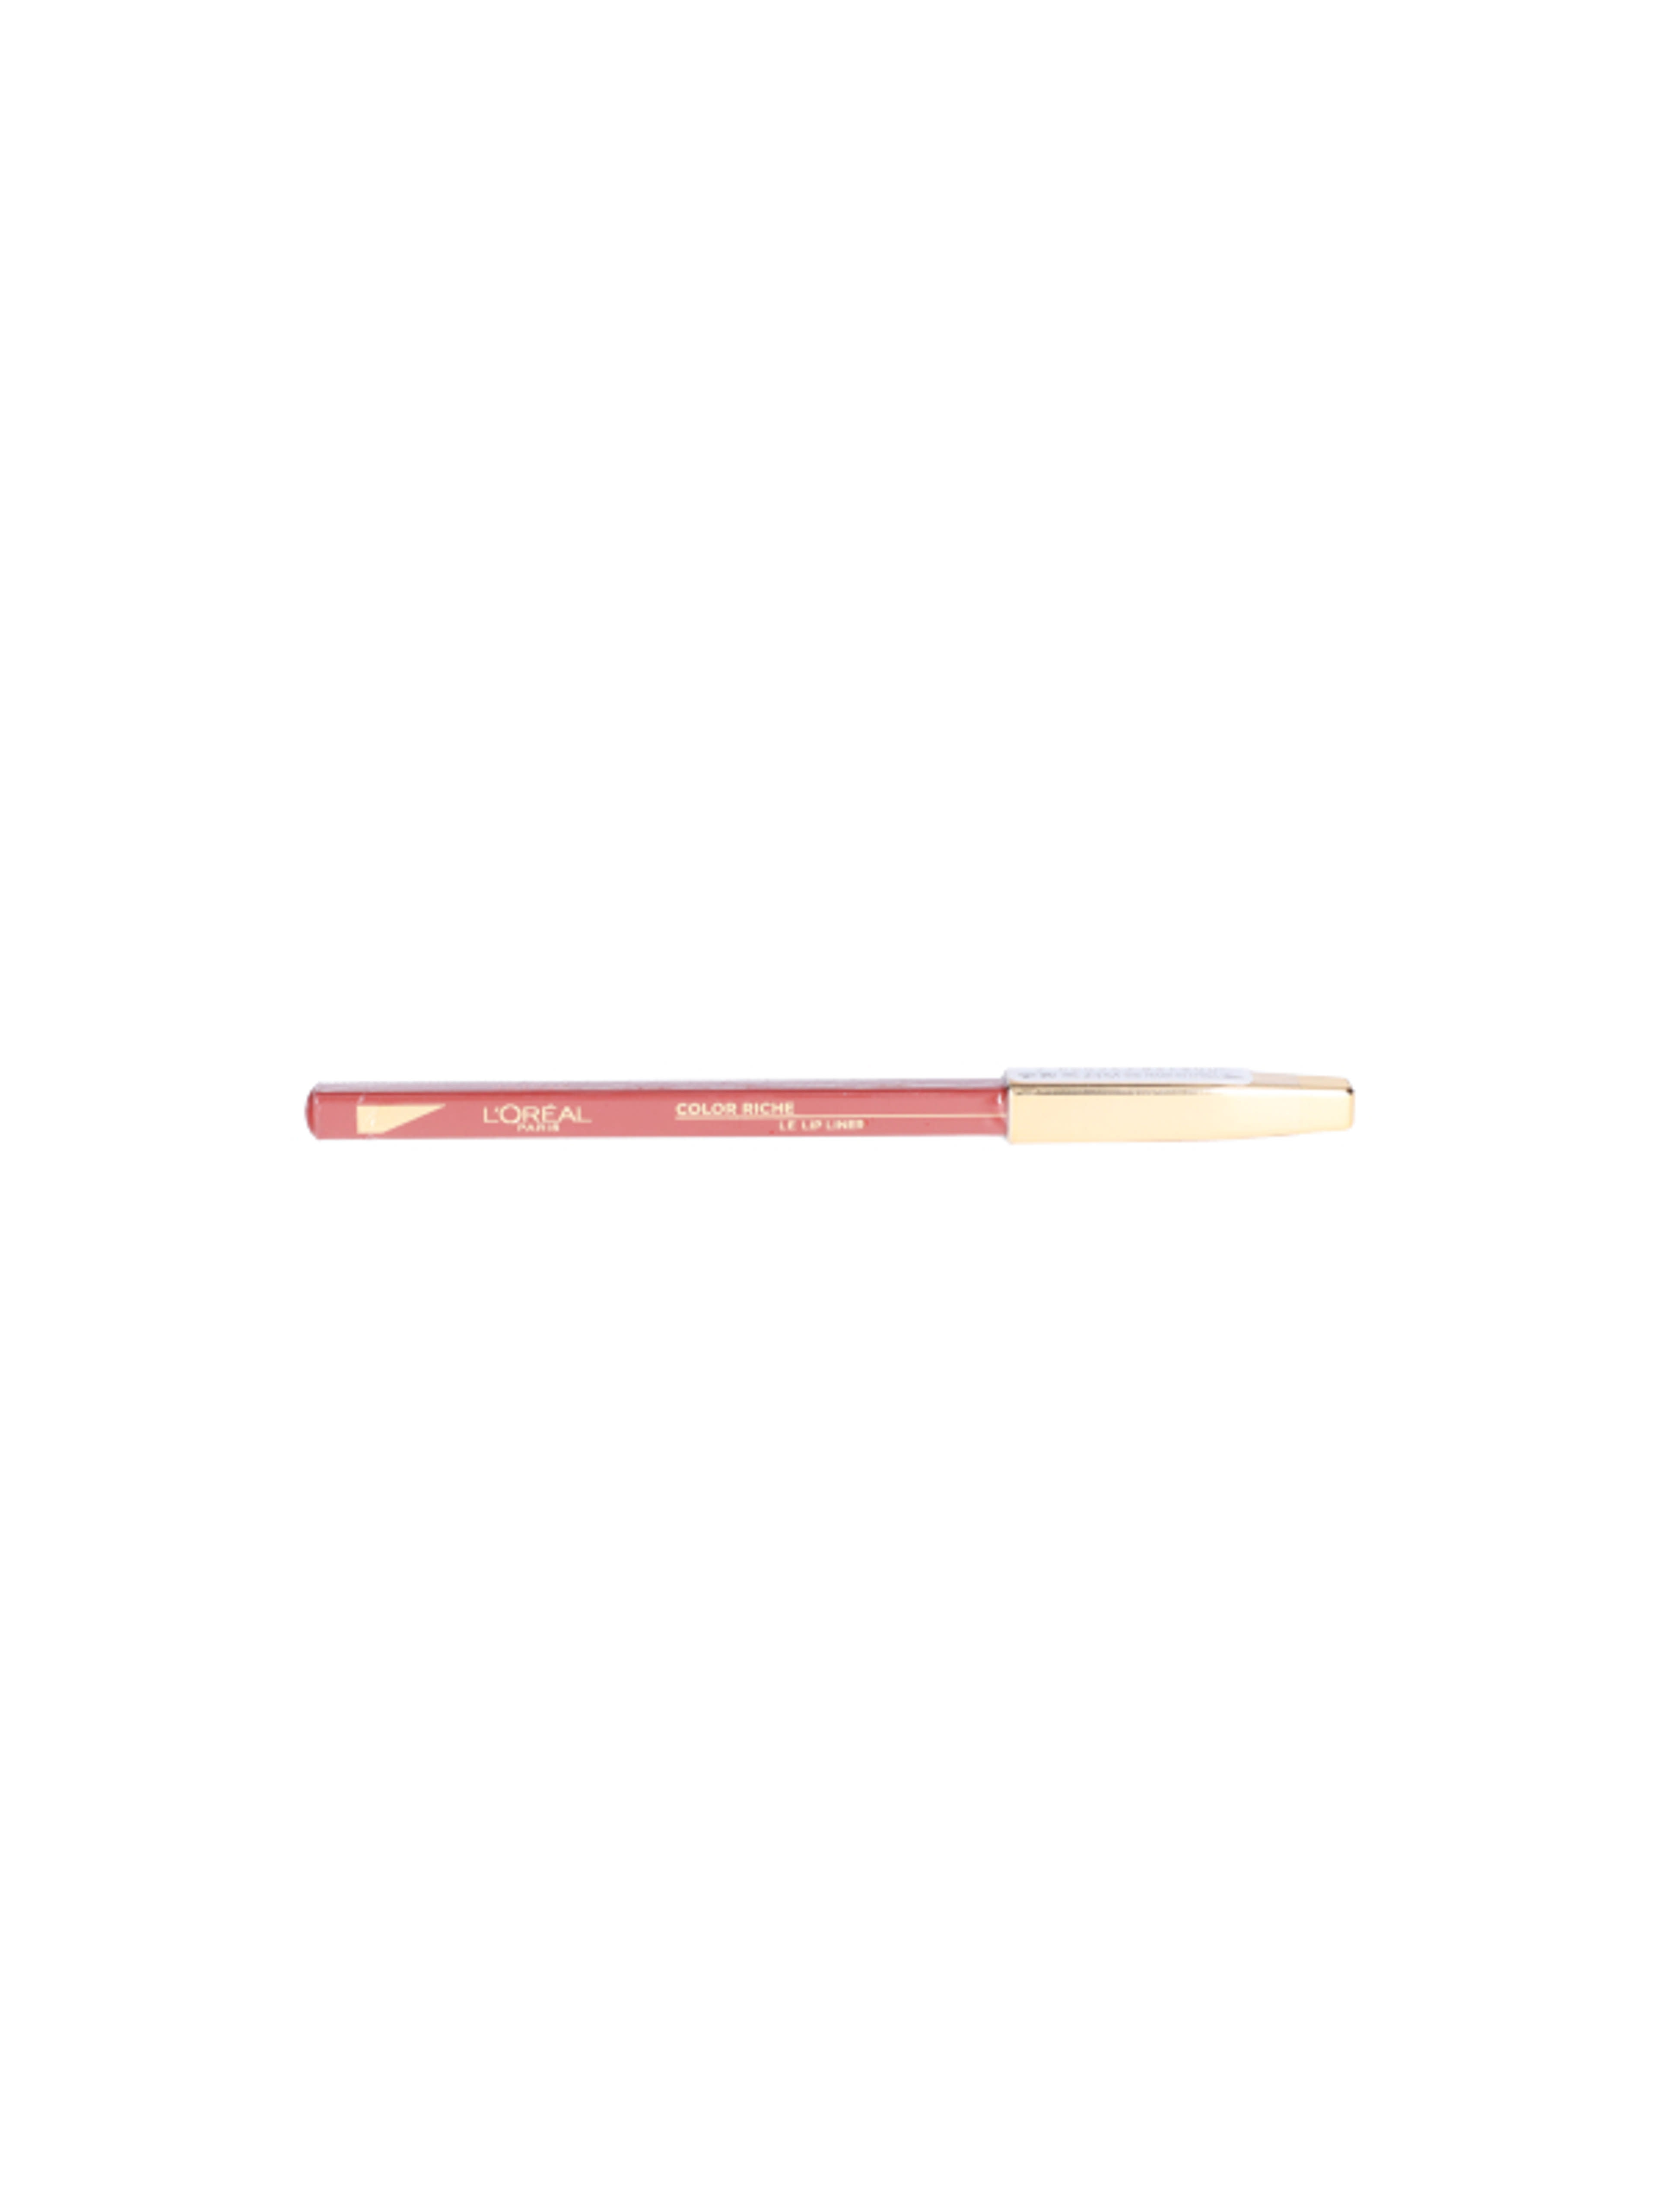 L'Oréal Paris Color Riche ajakkontúr ceruza 126 - 1 db-1